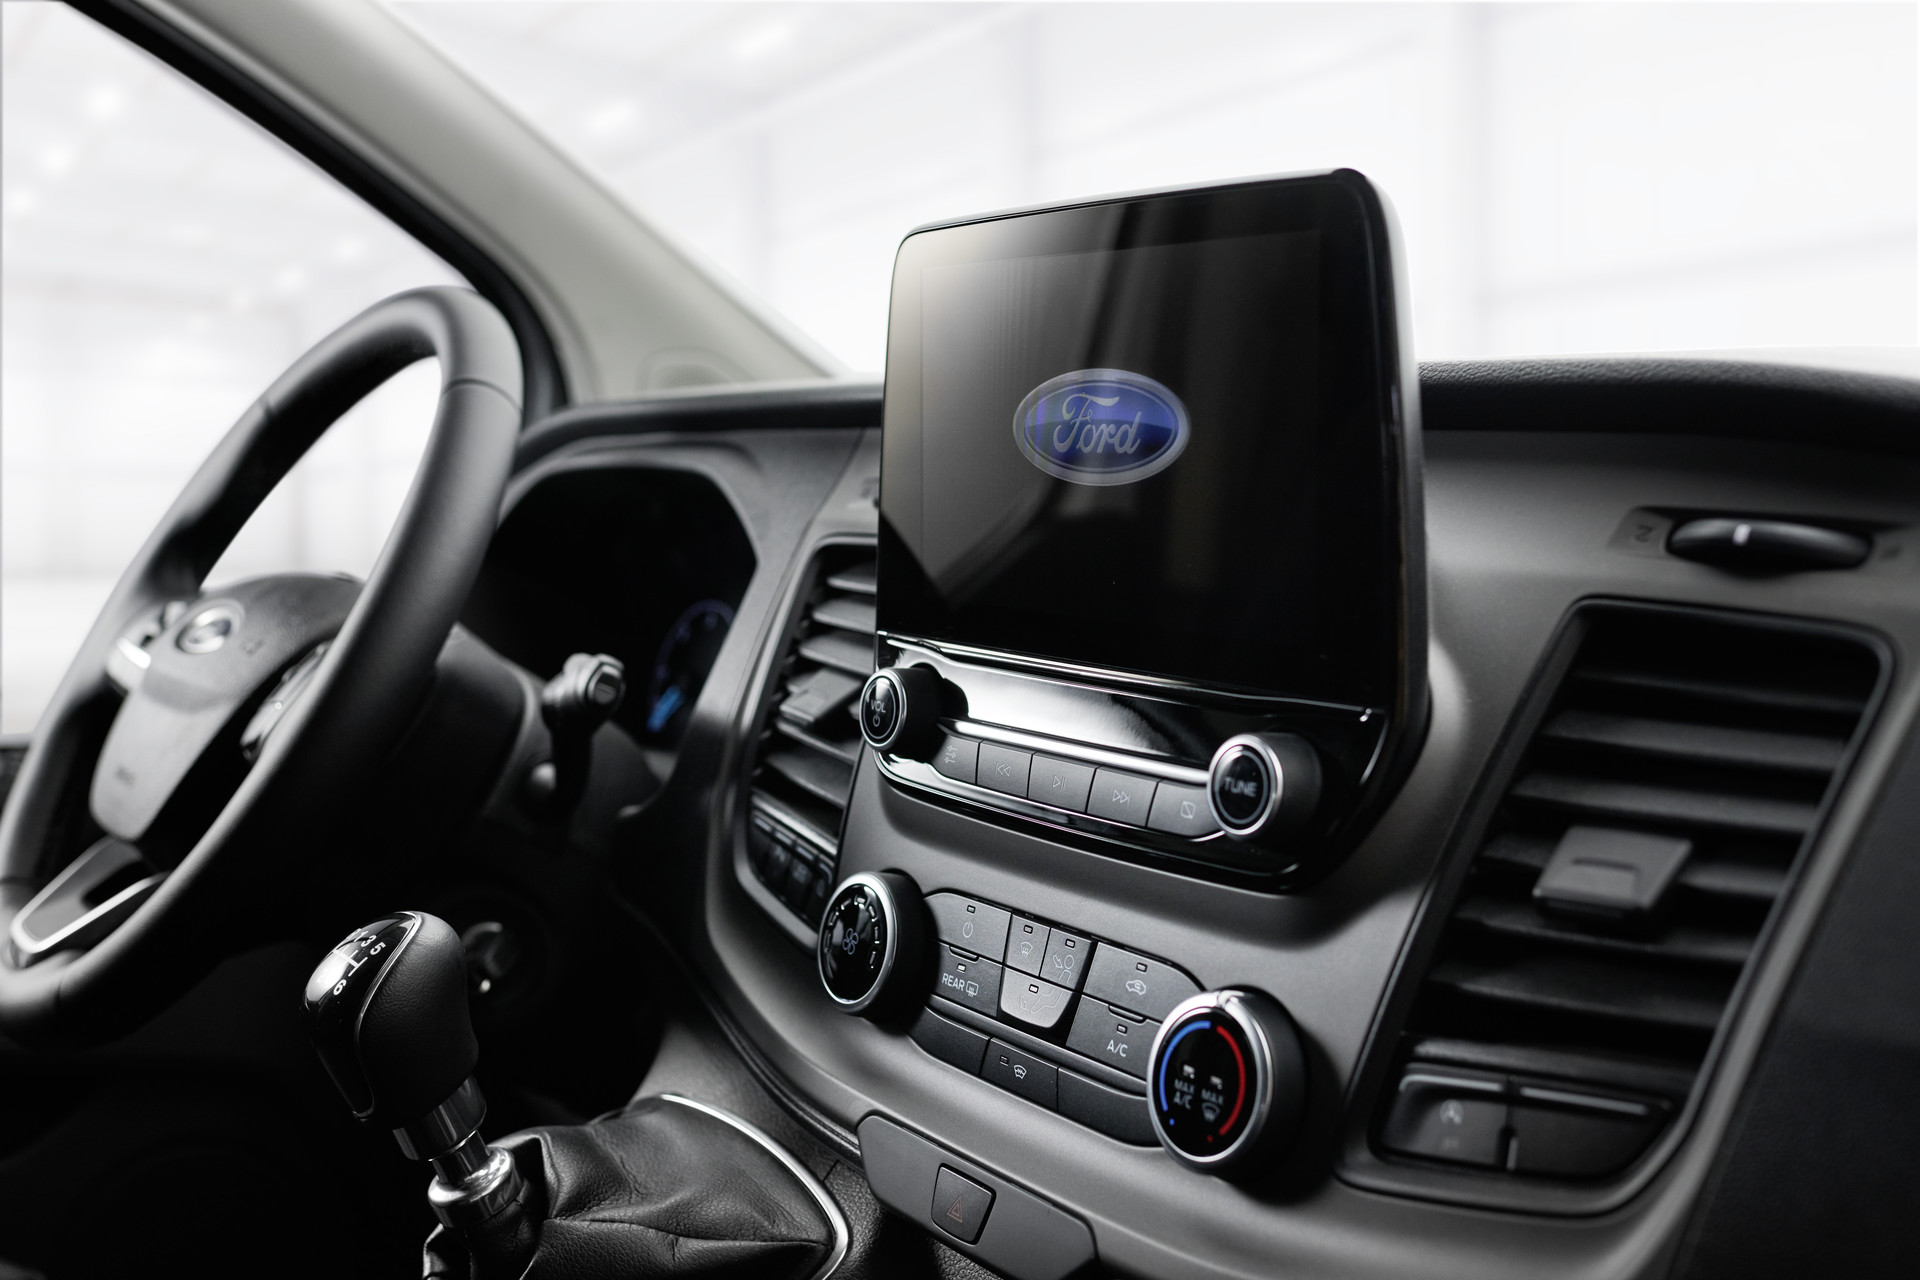 Sistema de audio de Ford con DAB+, retrocámara con transmisión de imágenes de la trayectoria hacia atrás en la pantalla multifunción, aire acondicionado incl. filtro de polvo y polen.